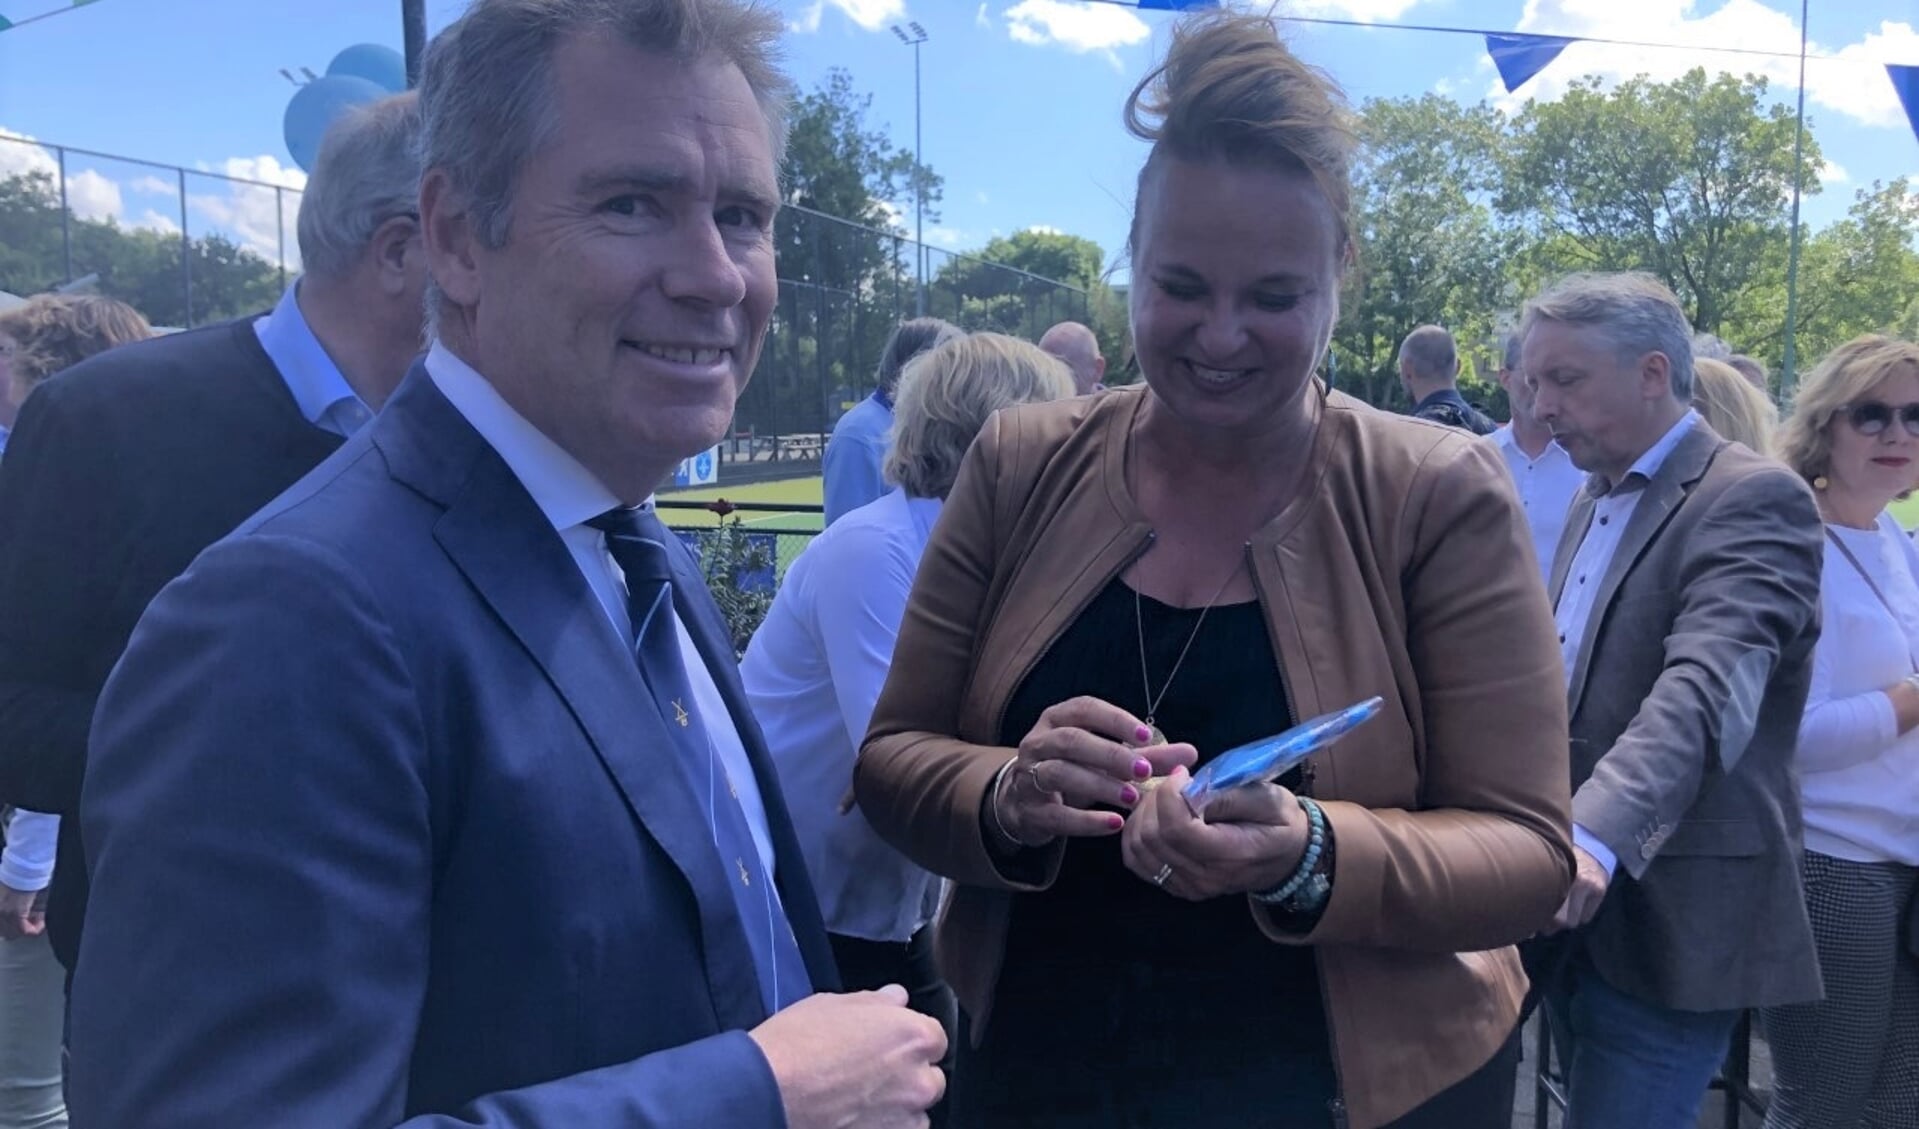 Voorzitter Martijn Schoonhoven overhandigt burgemeester Nadine Stemerdink de scheidsrechtersfluit waarmee zij het startsein van de jubileumactiviteiten geeft